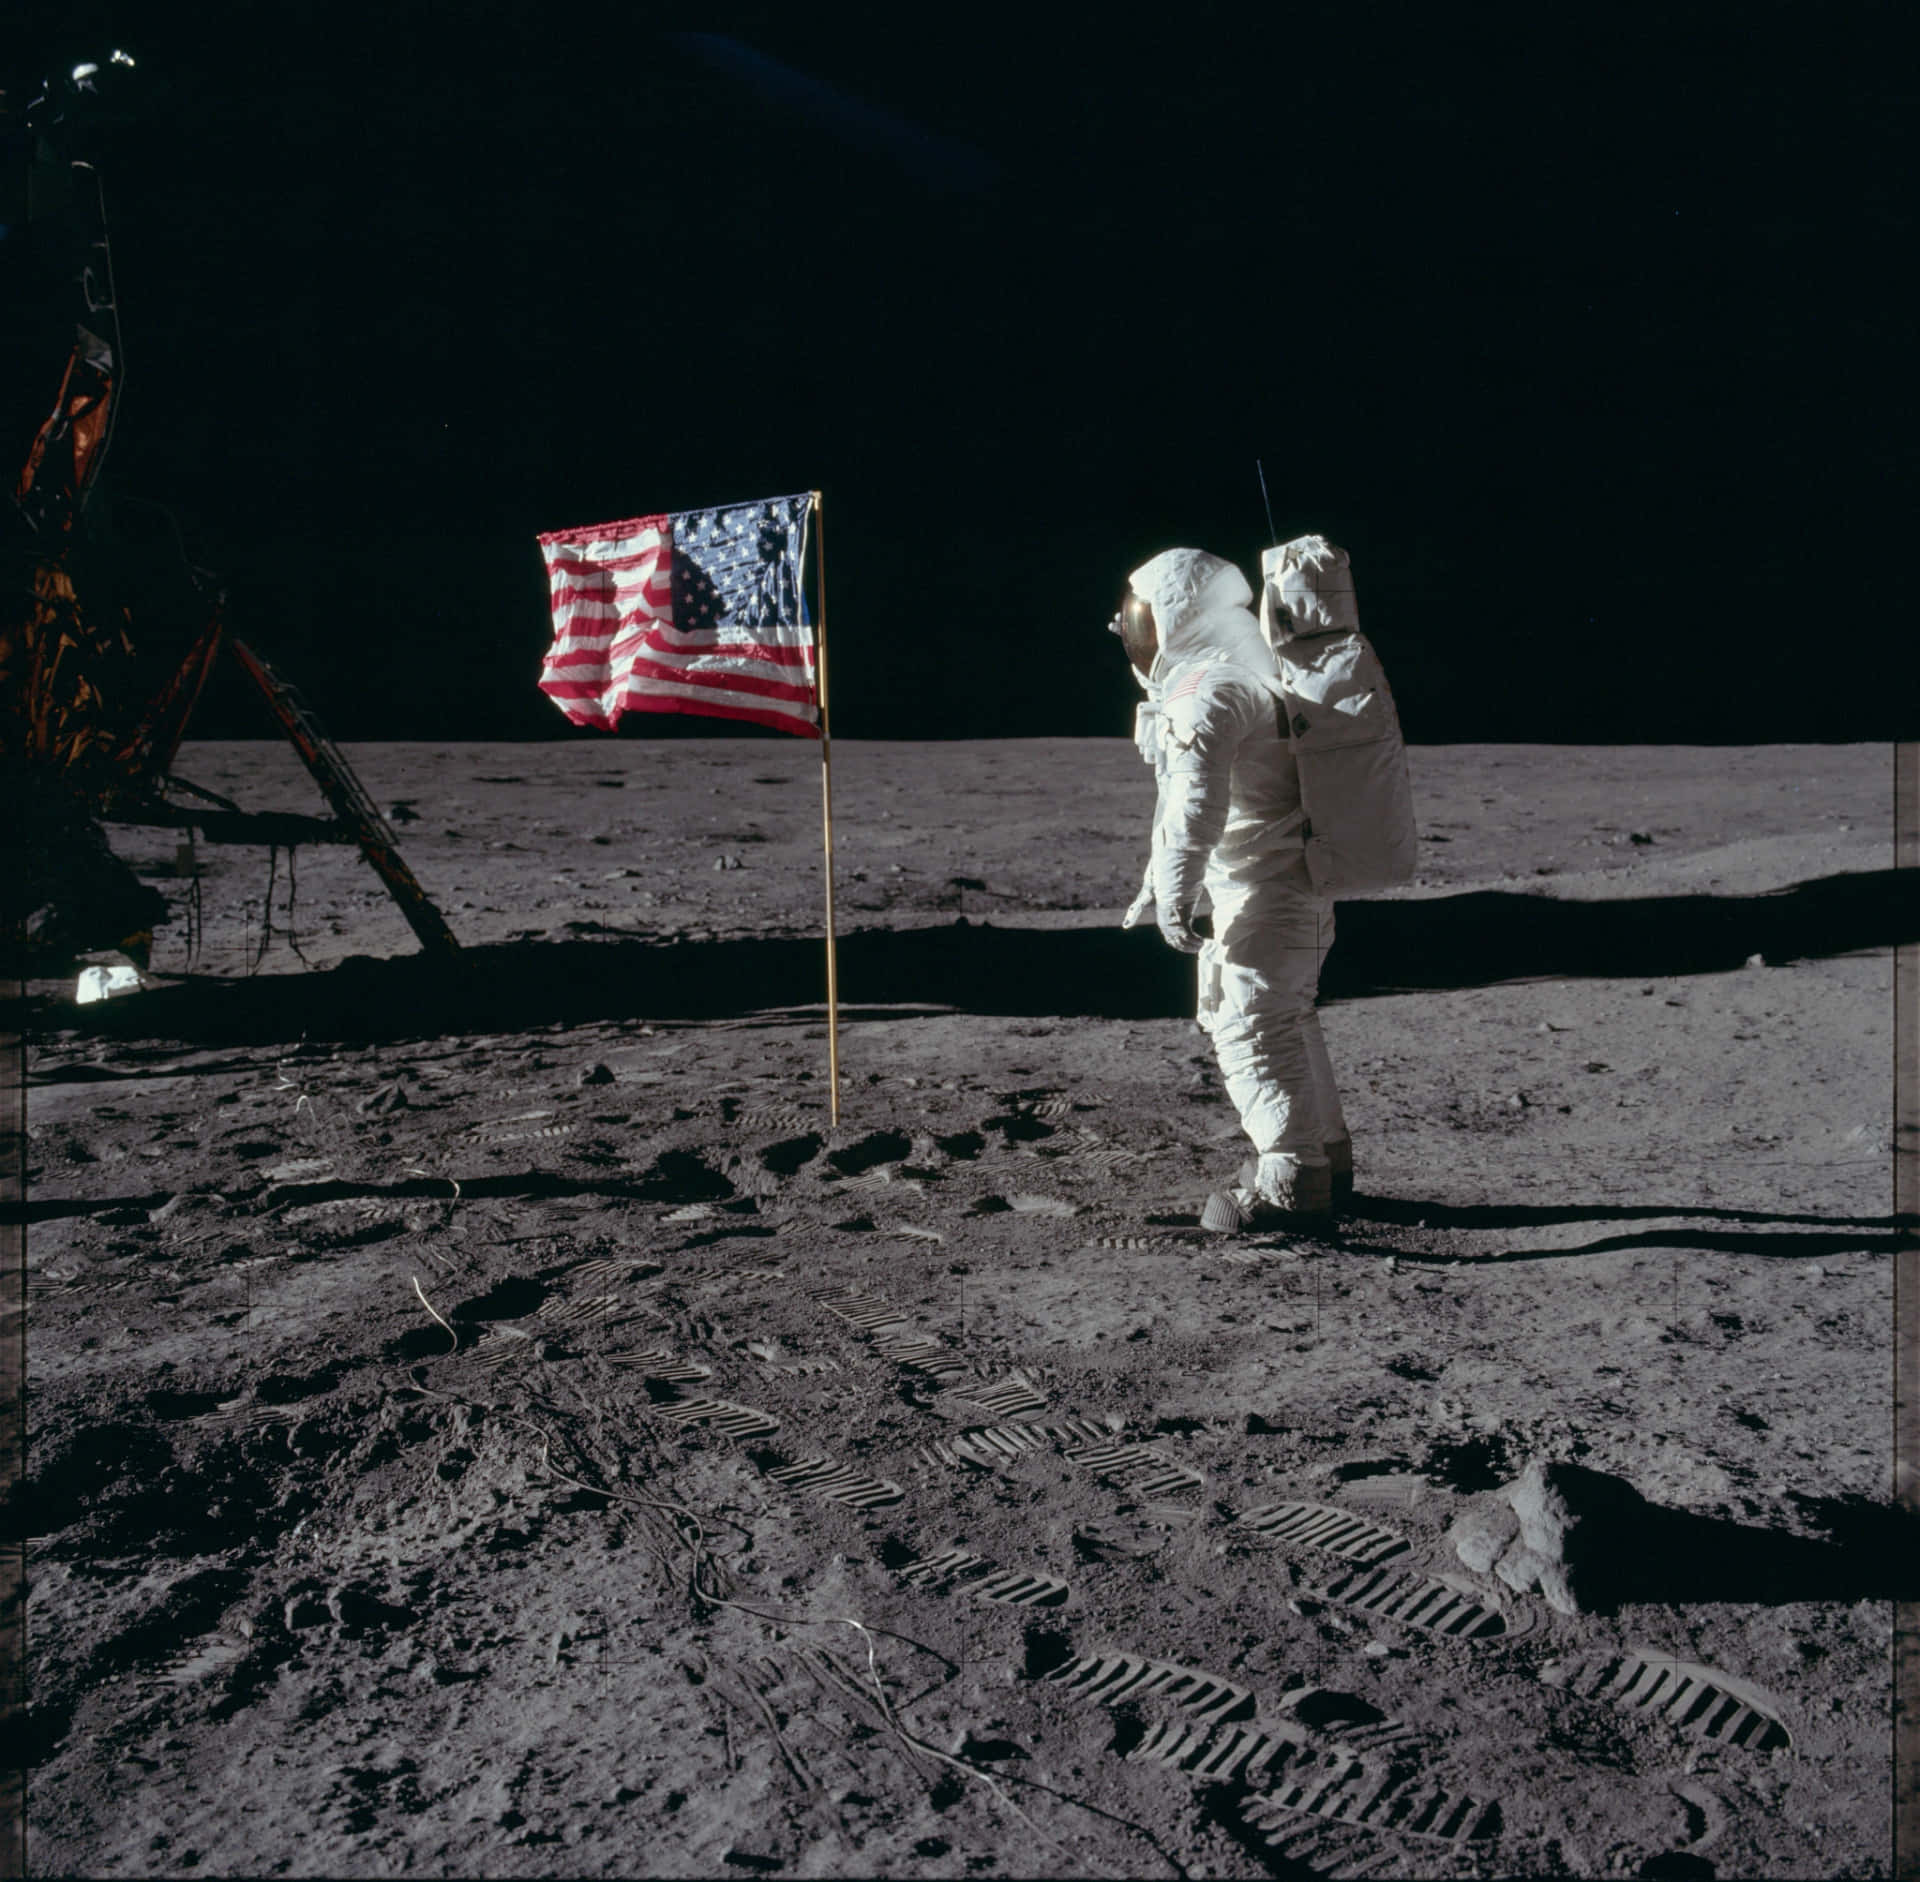 Imagende La Misión Espacial Del Apollo 11 En La Superficie Lunar.